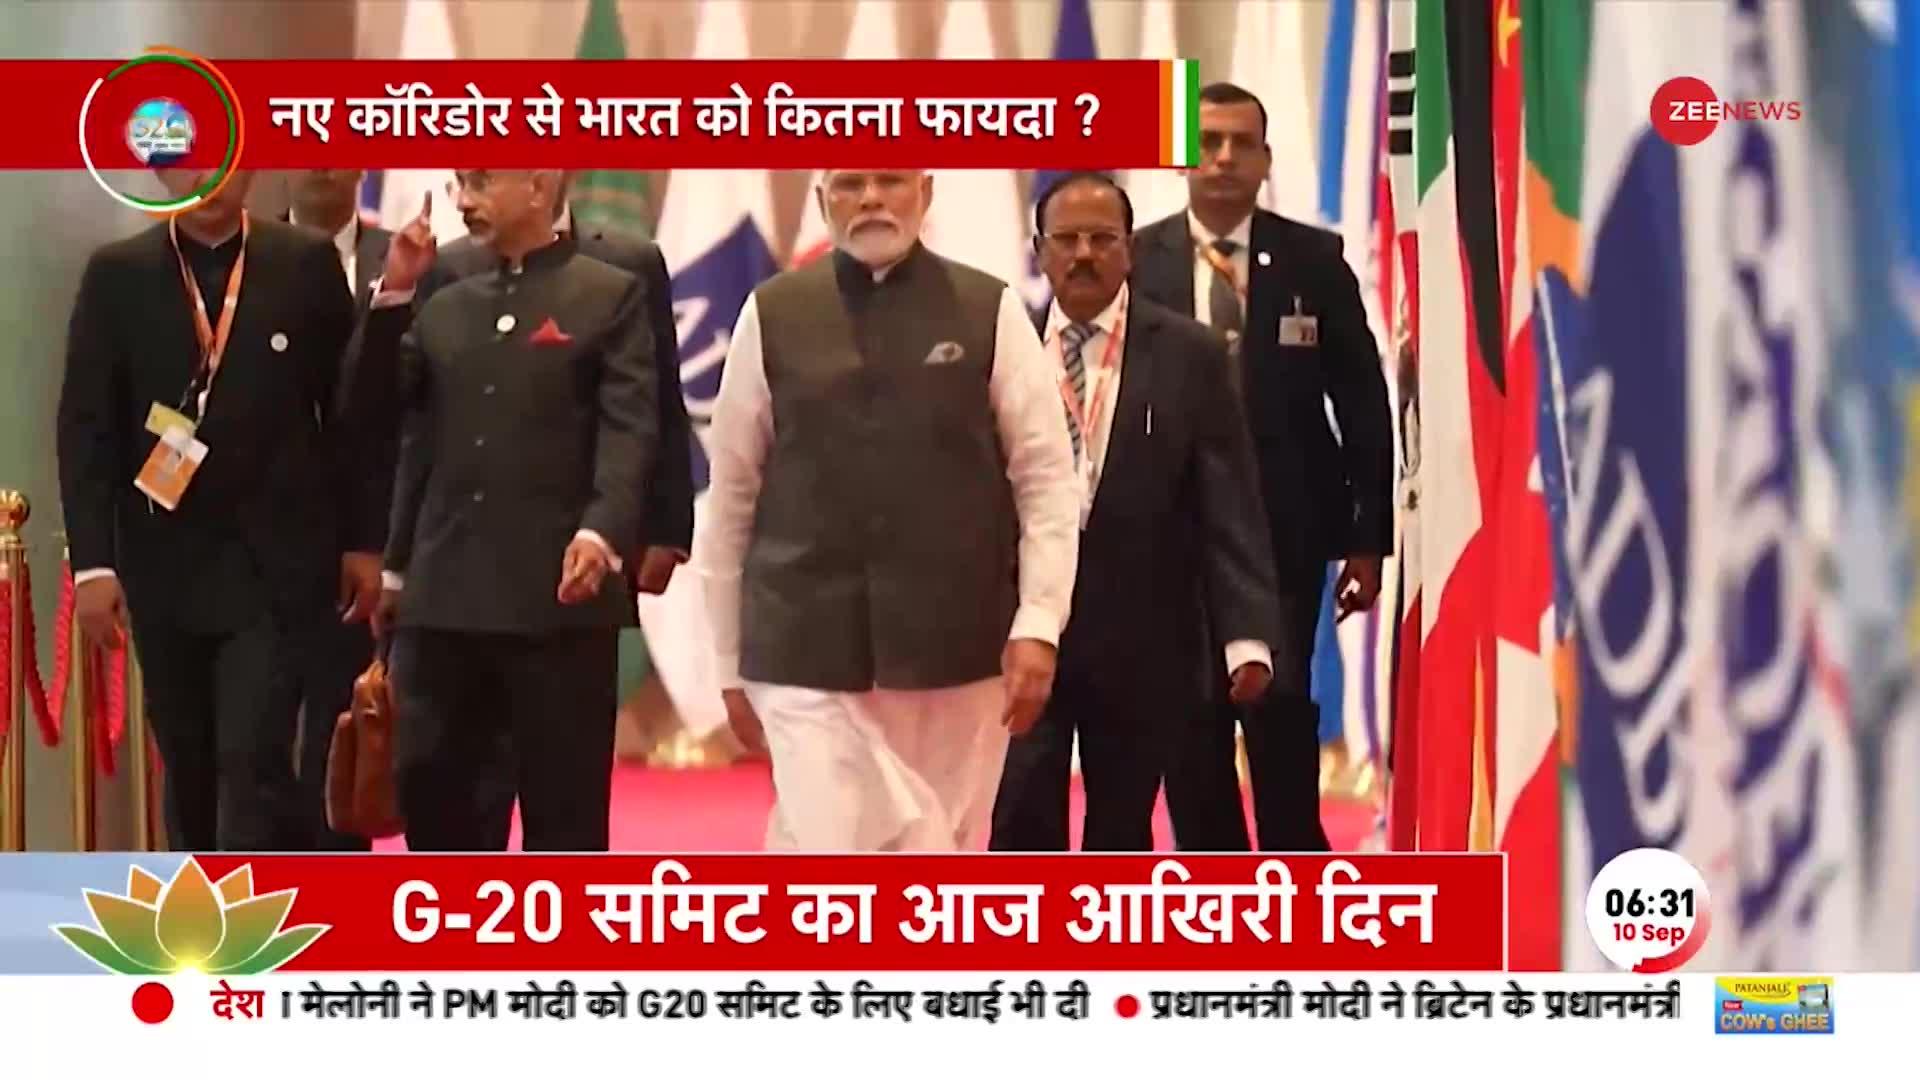 G20 Summit update: भारत को महाशक्ति बनाएगा कॉरिडोर, मिडिल ईस्ट में ट्रेन मेंं ट्रेन चलेगी भारत बढेगा